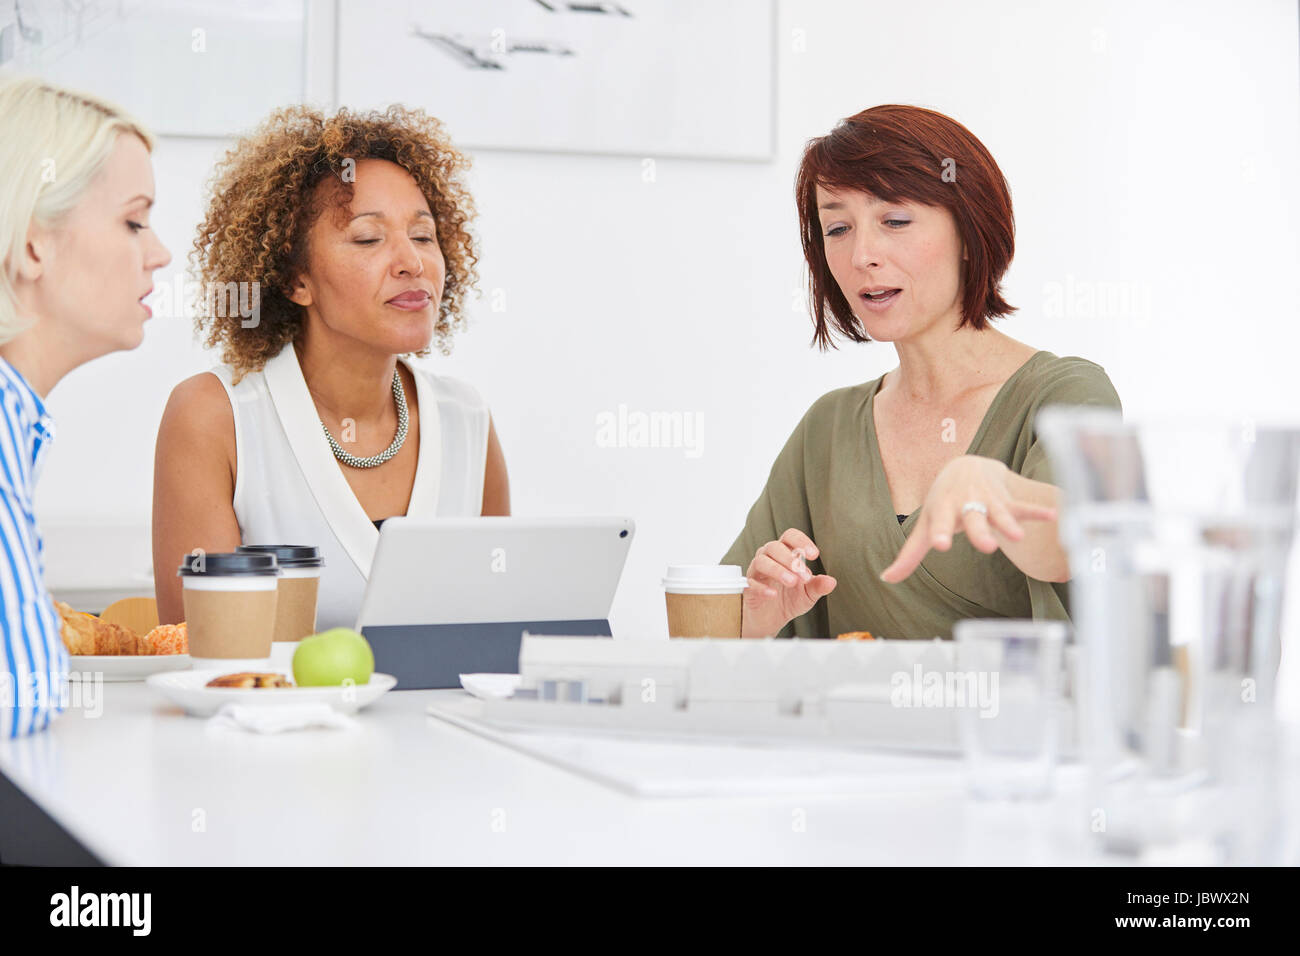 Architektin erklärt Architekturmodell auf Tisch im Team-meeting Stockfoto